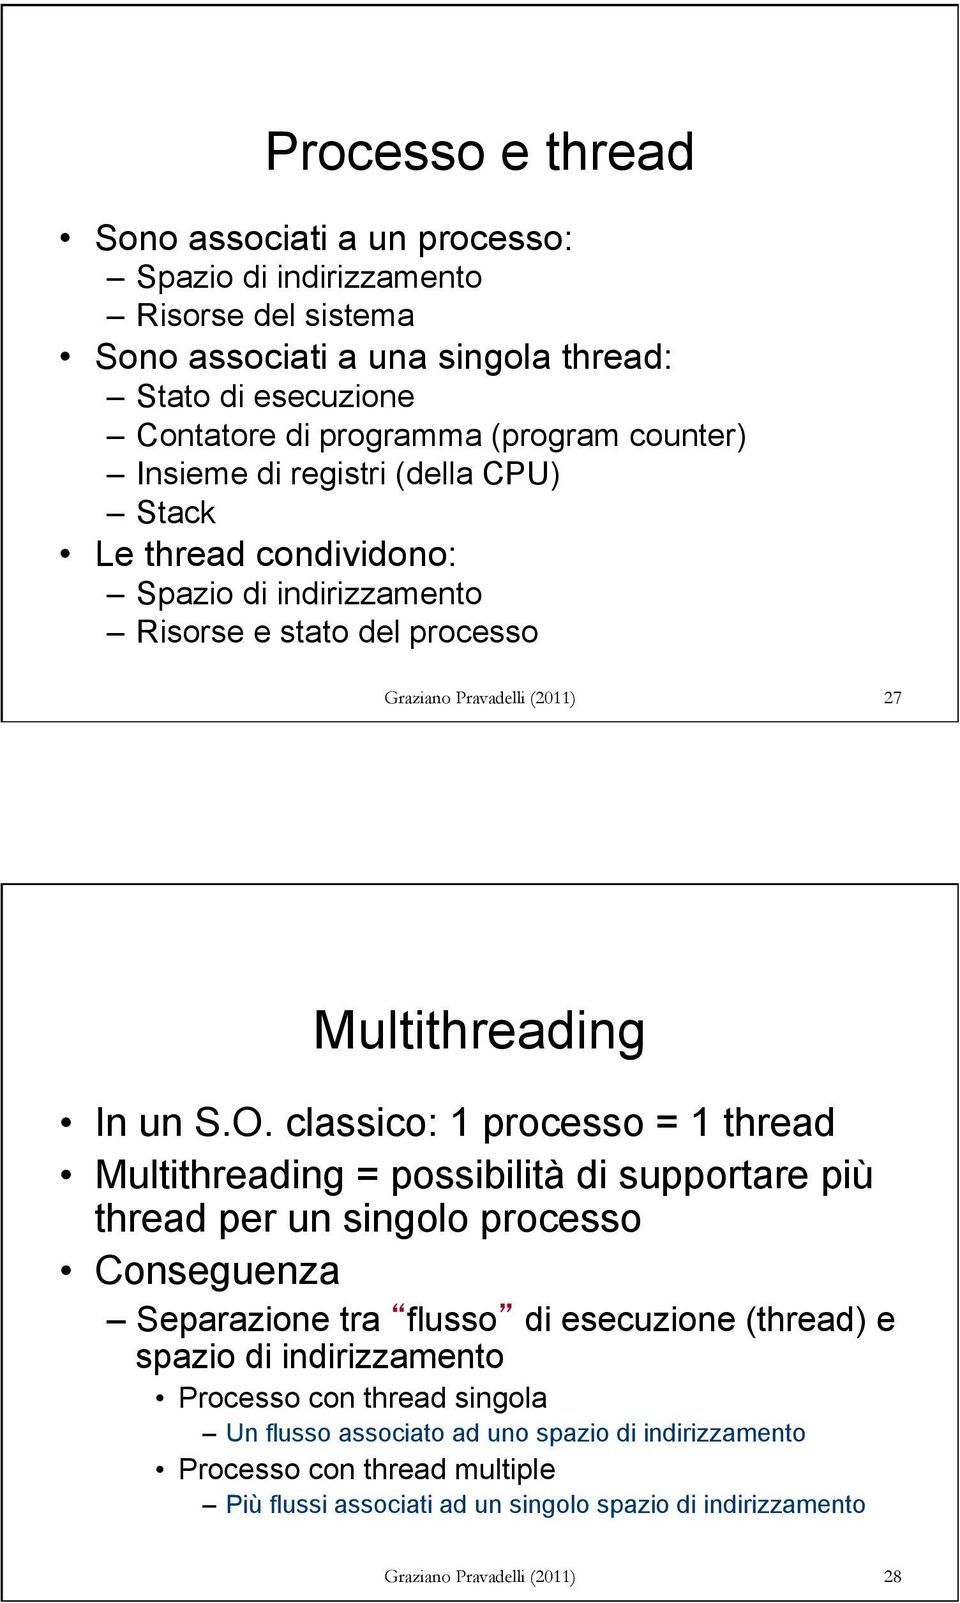 classico: 1 processo = 1 thread Multithreading = possibilità di supportare più thread per un singolo processo Conseguenza Separazione tra flusso di esecuzione (thread) e spazio di